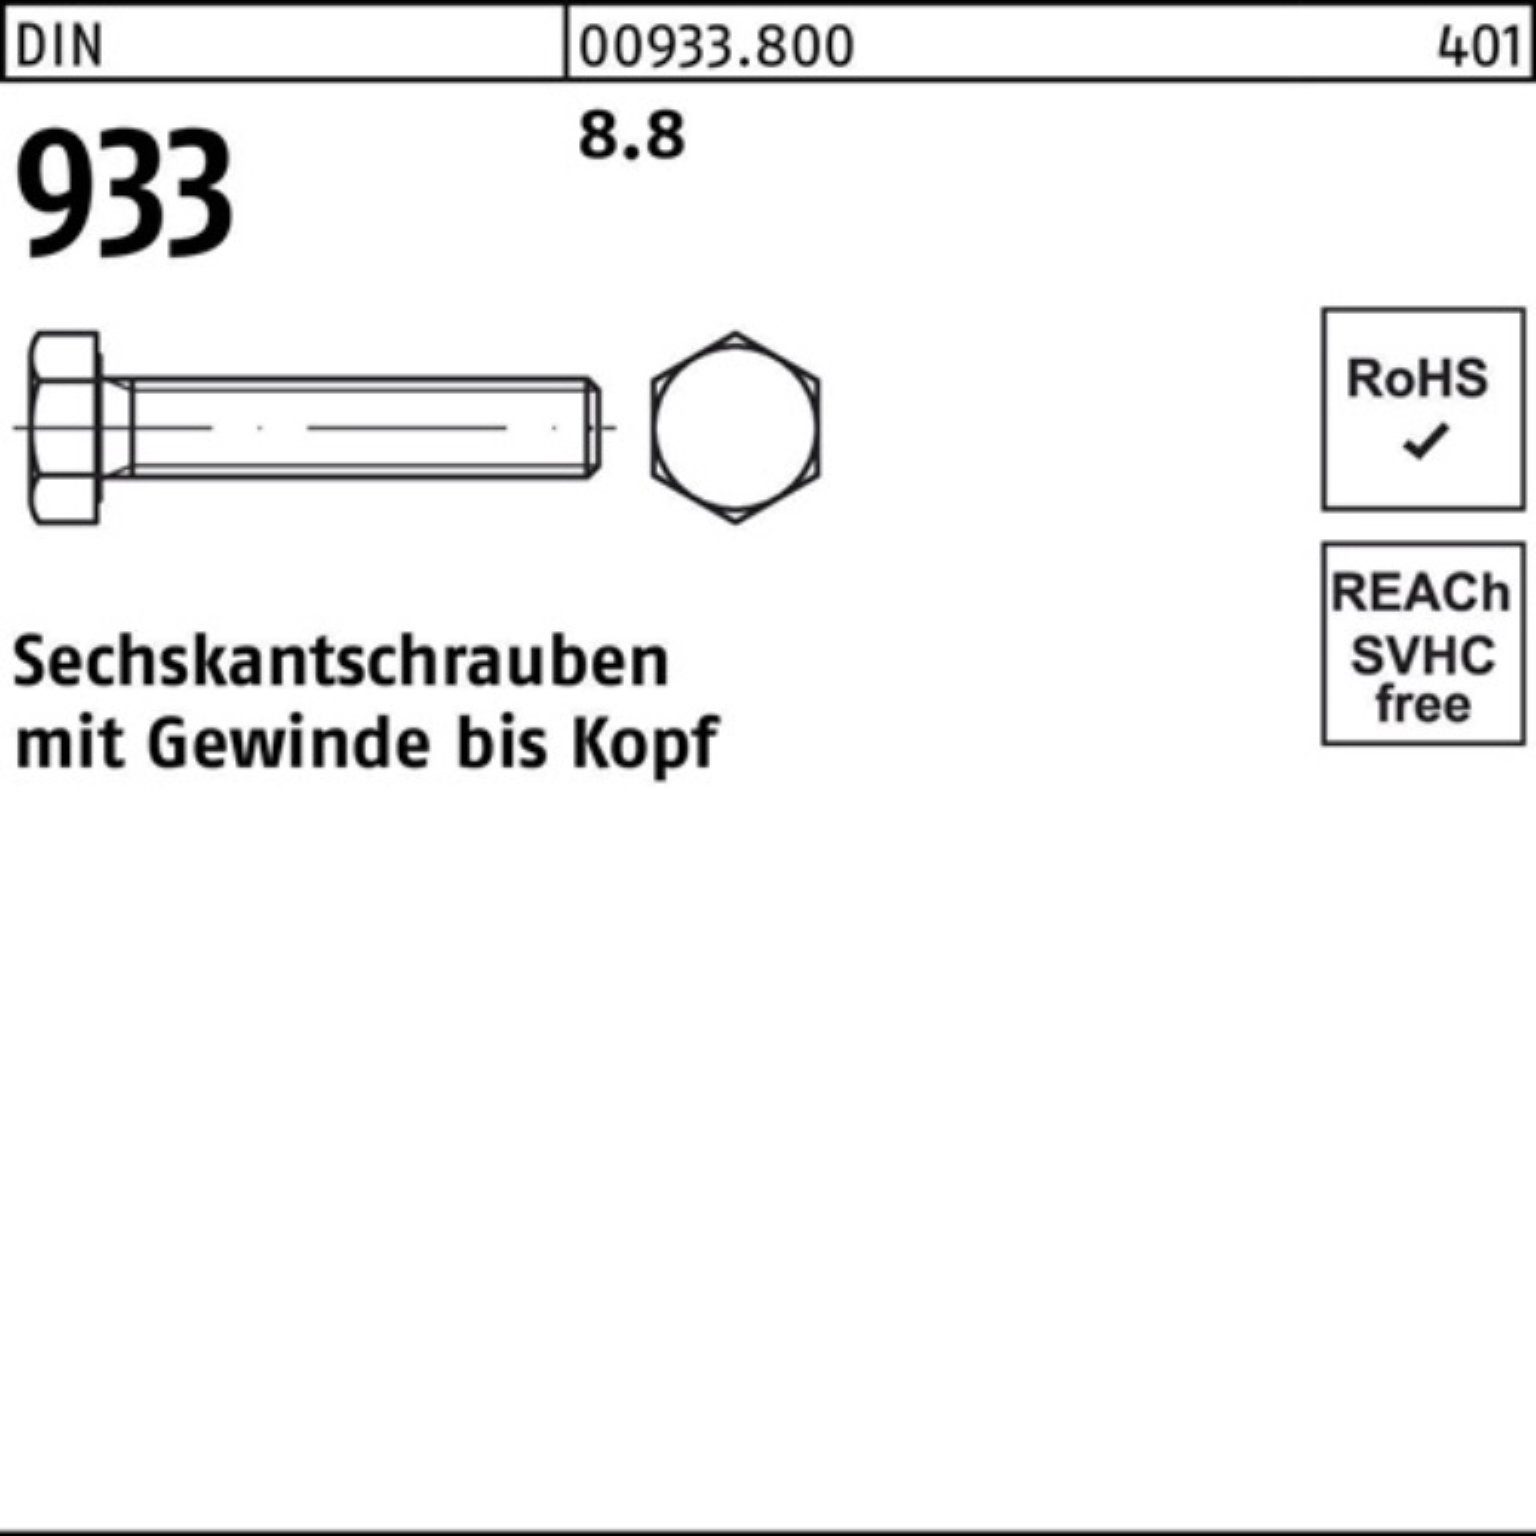 933 Sechskantschraube 8 Pack DIN DIN Sechskantschraube VG 8.8 100er Reyher M42x 85 1 Stück 933